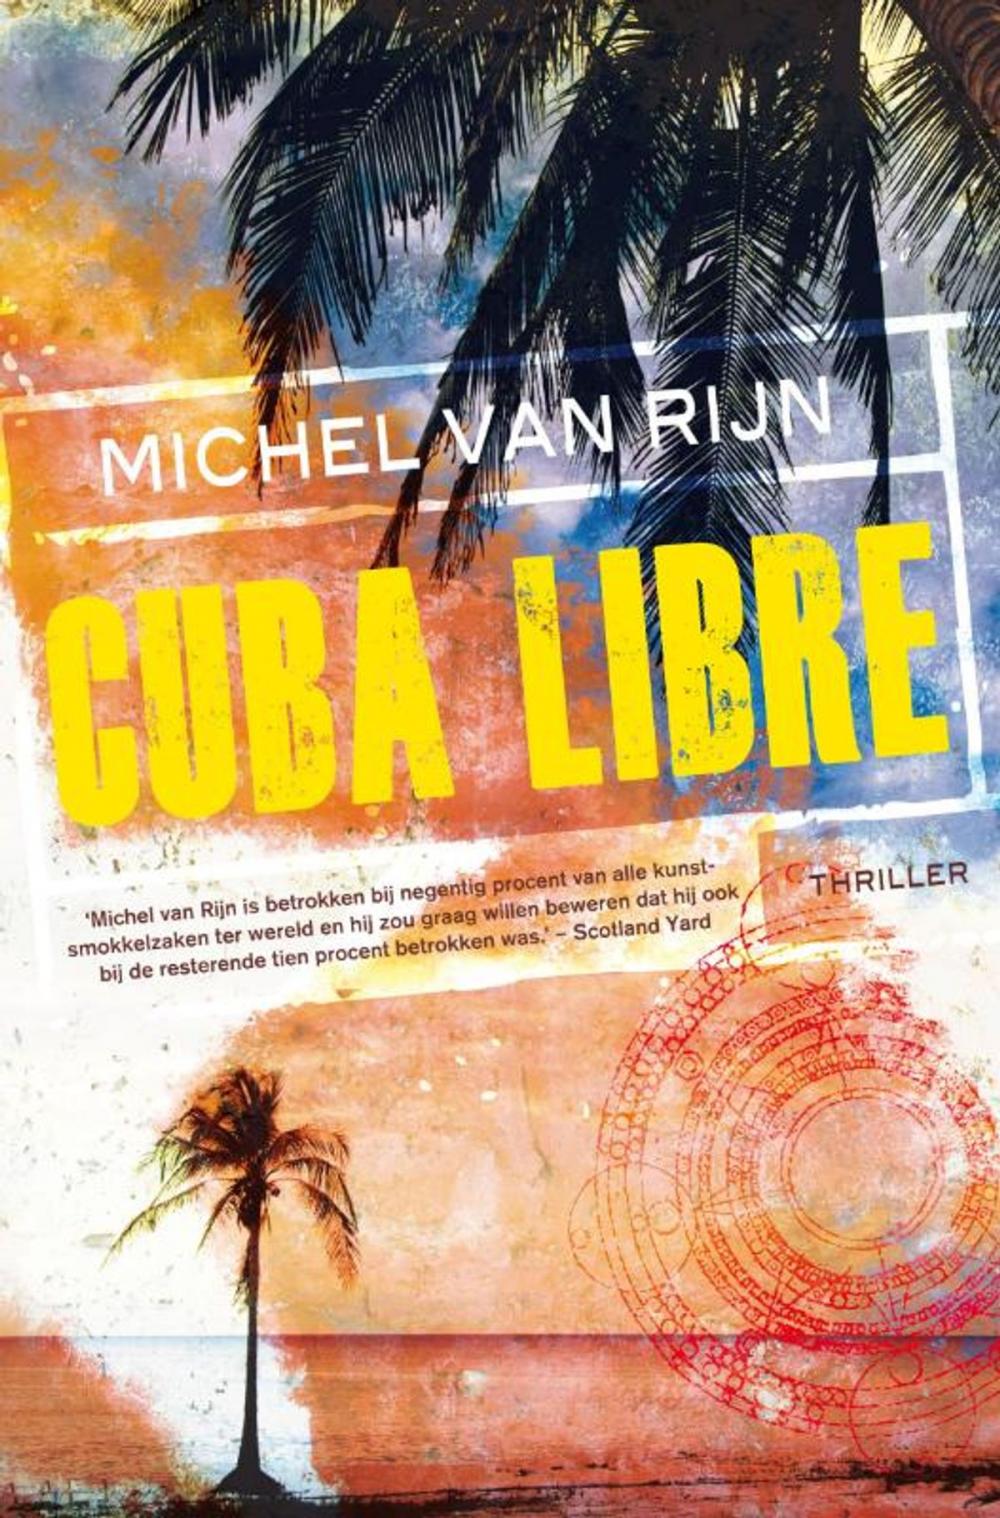 Big bigCover of Cuba Libre